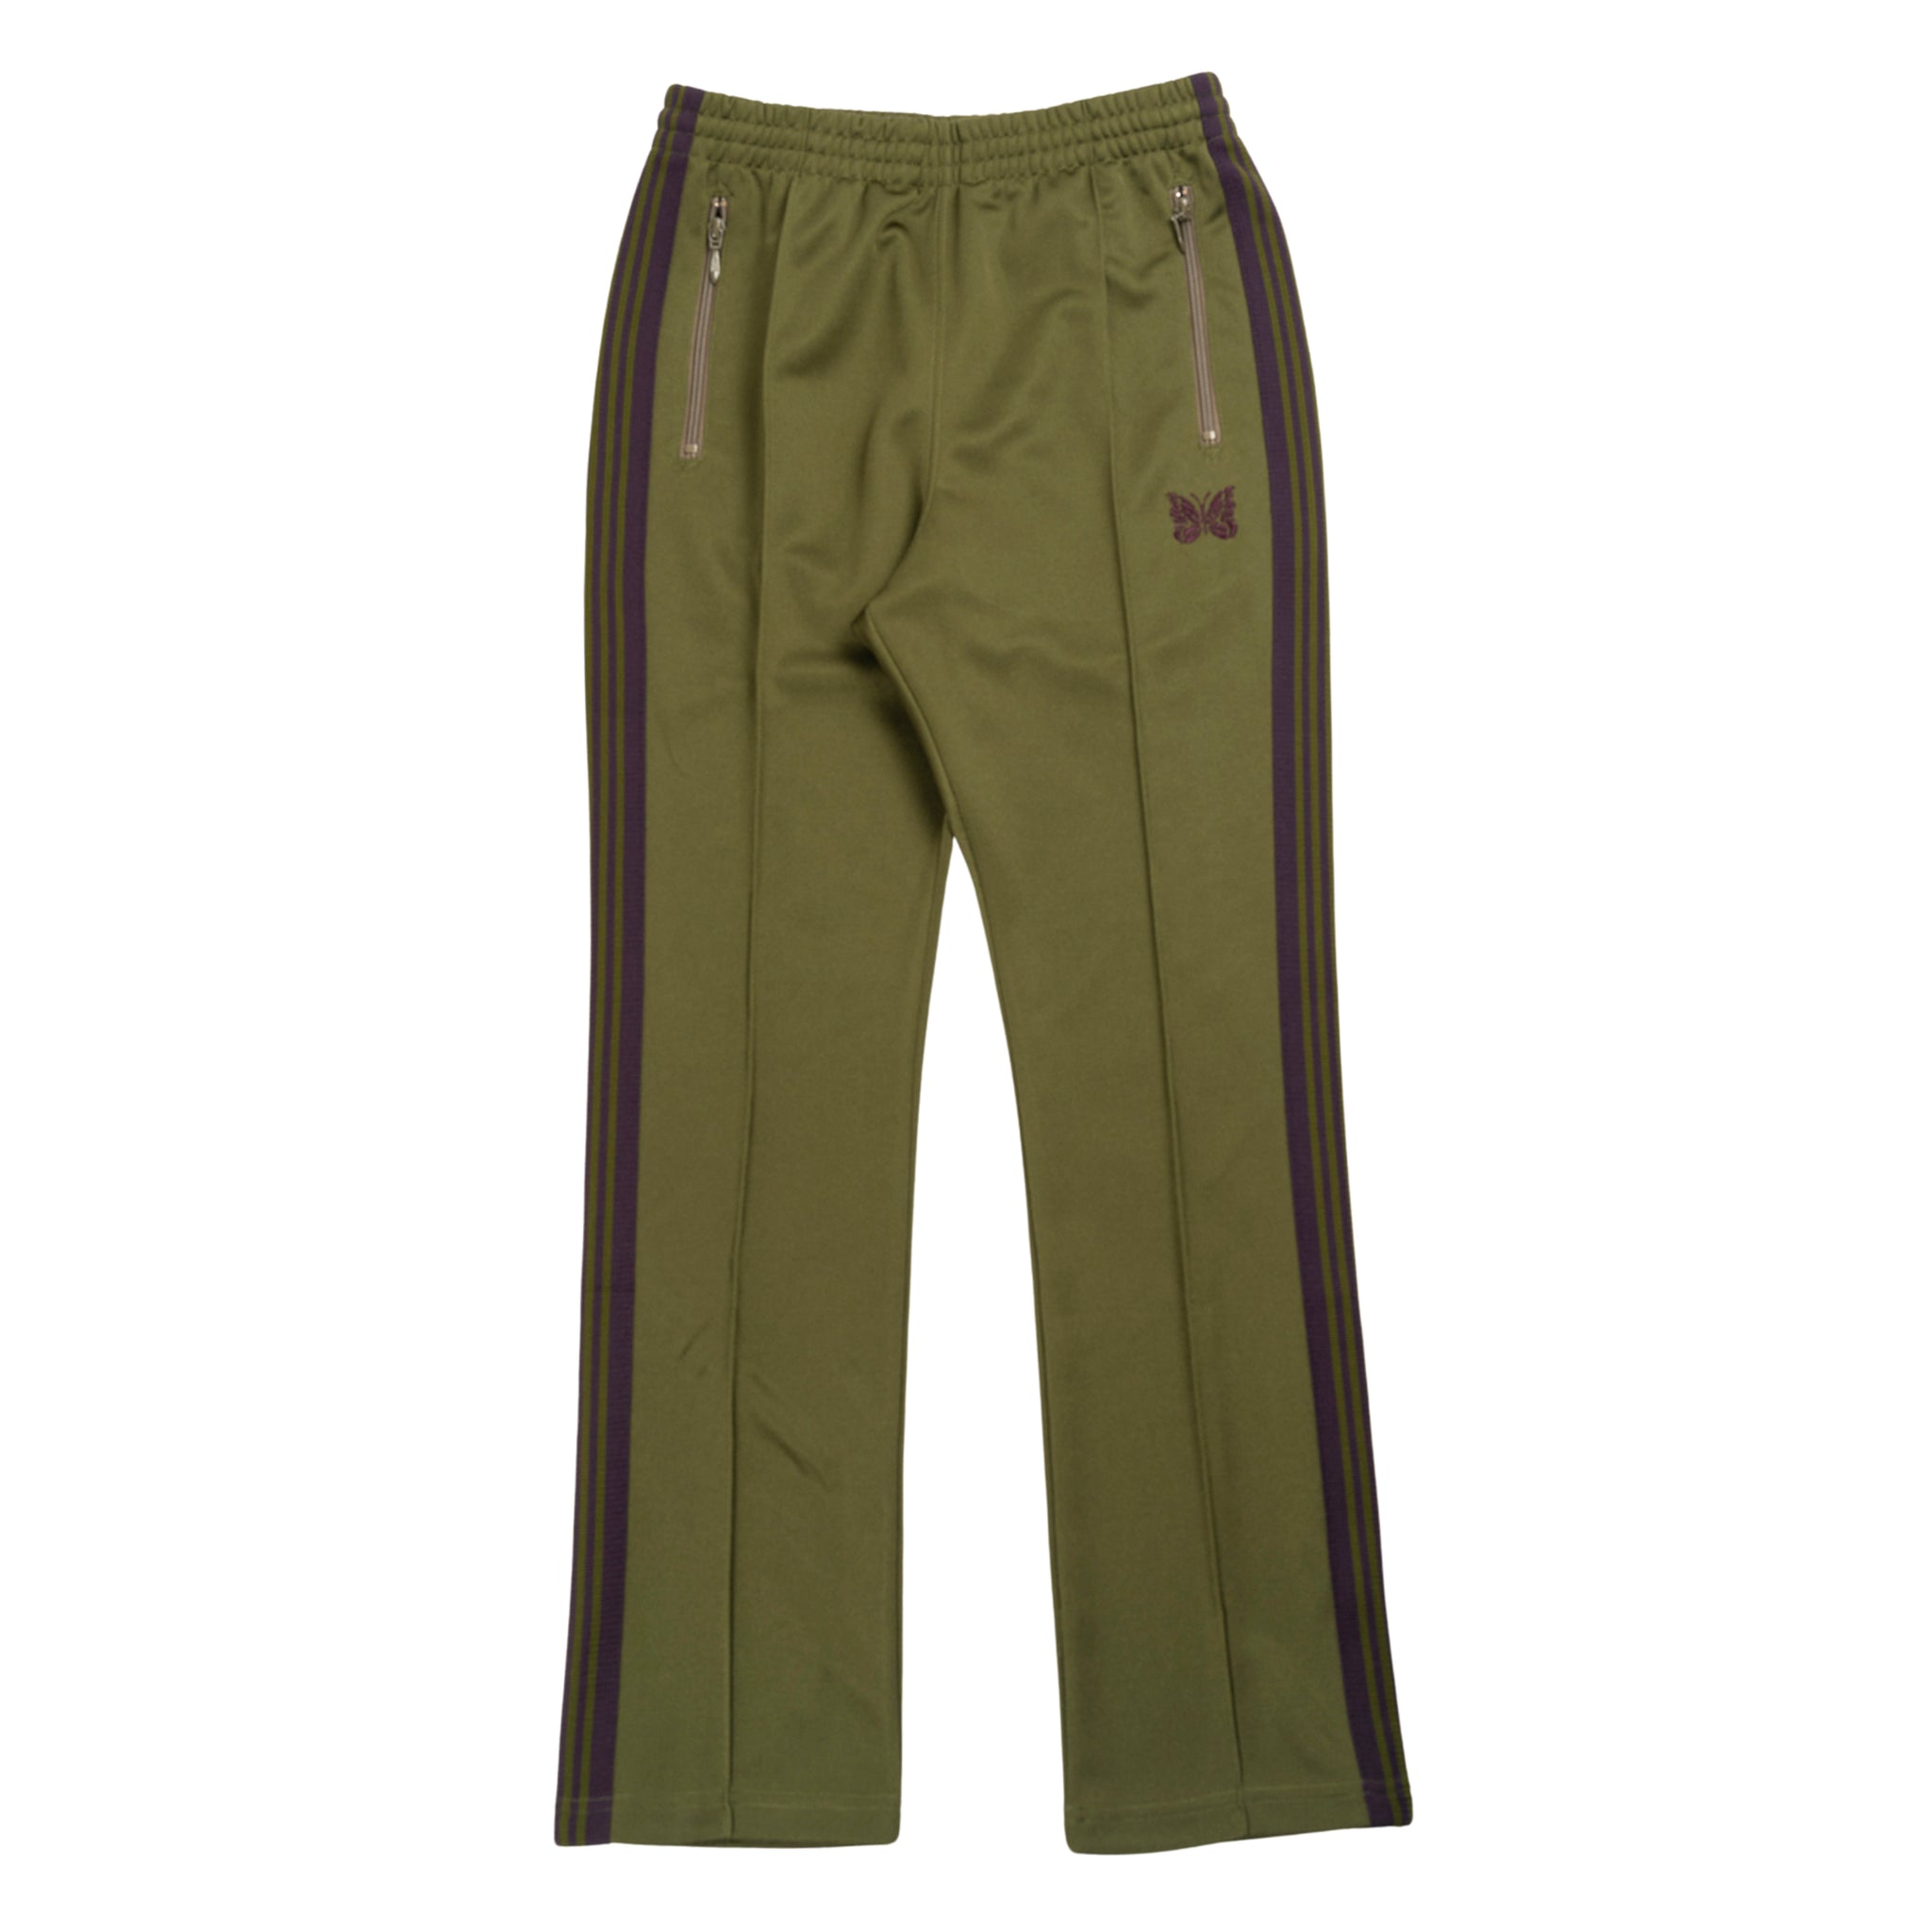 Narrow pantalone della tuta in verde oliva